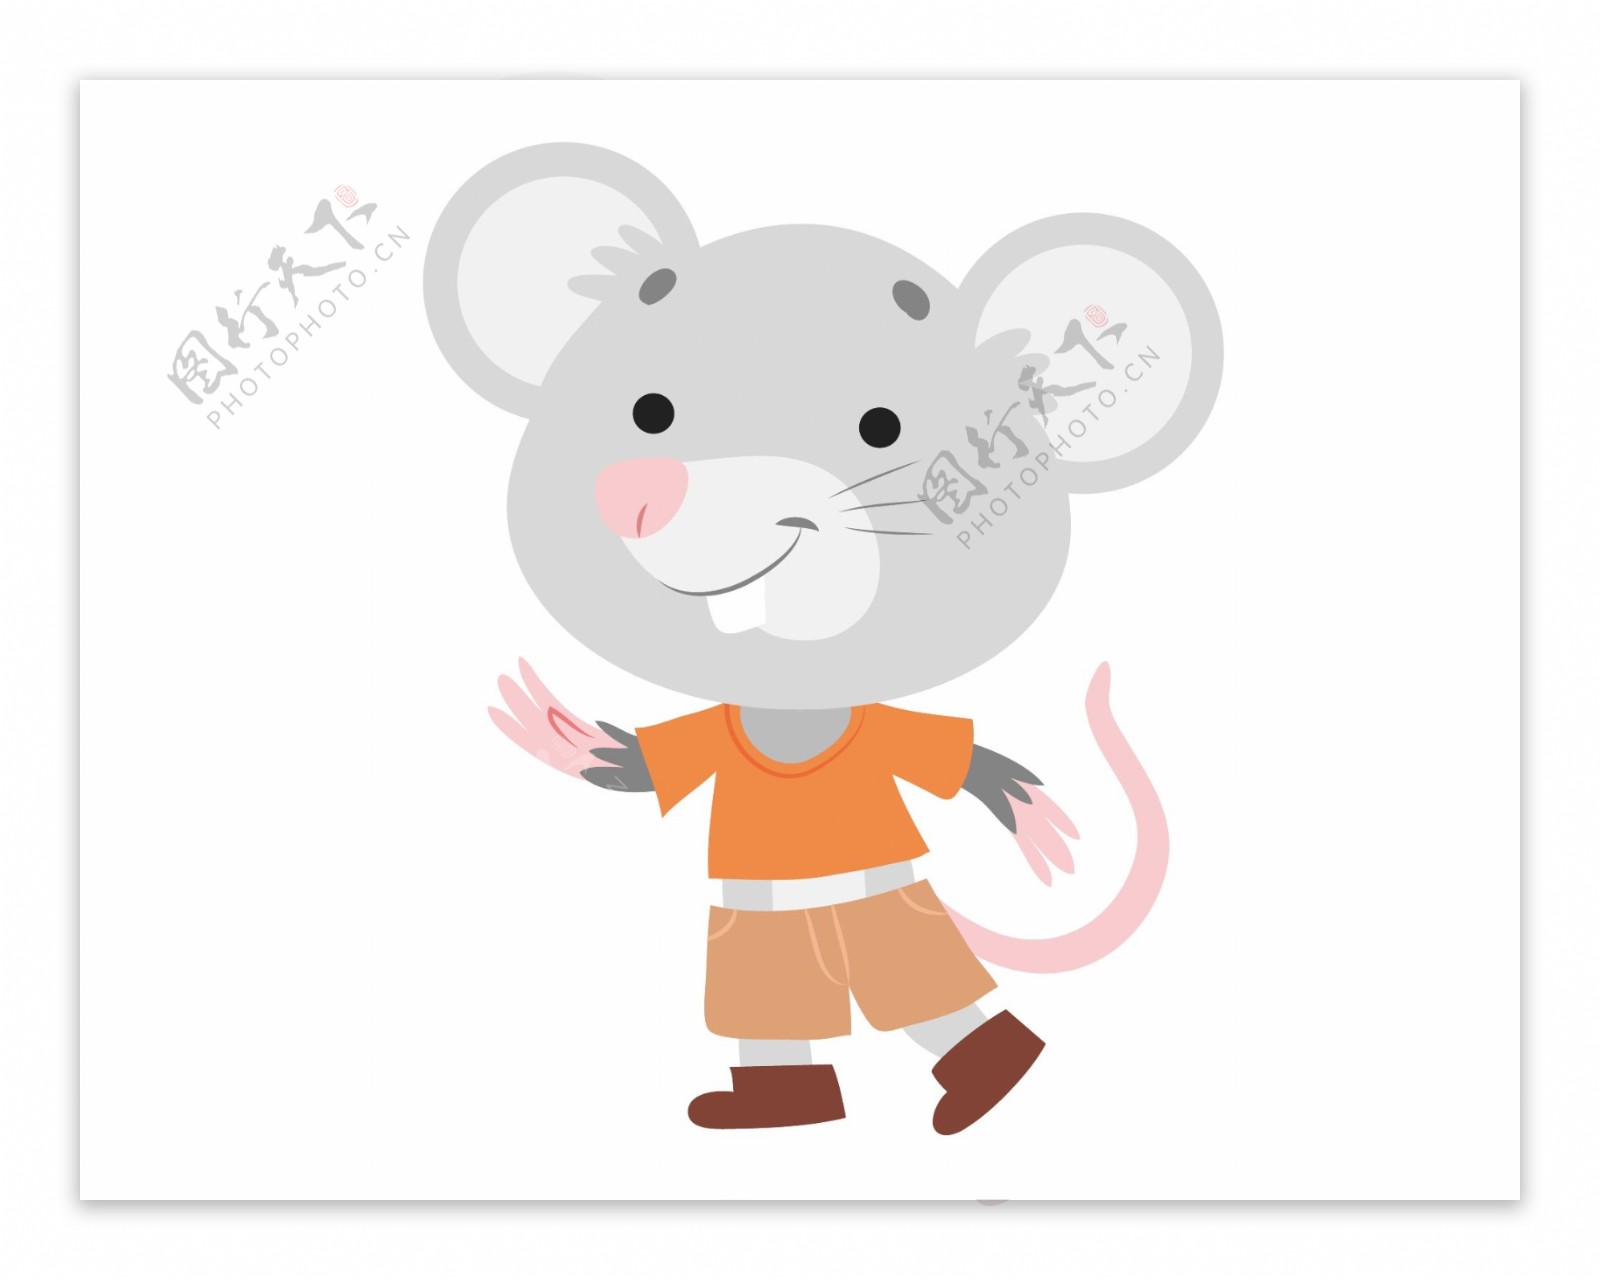 卡通可爱小老鼠元素